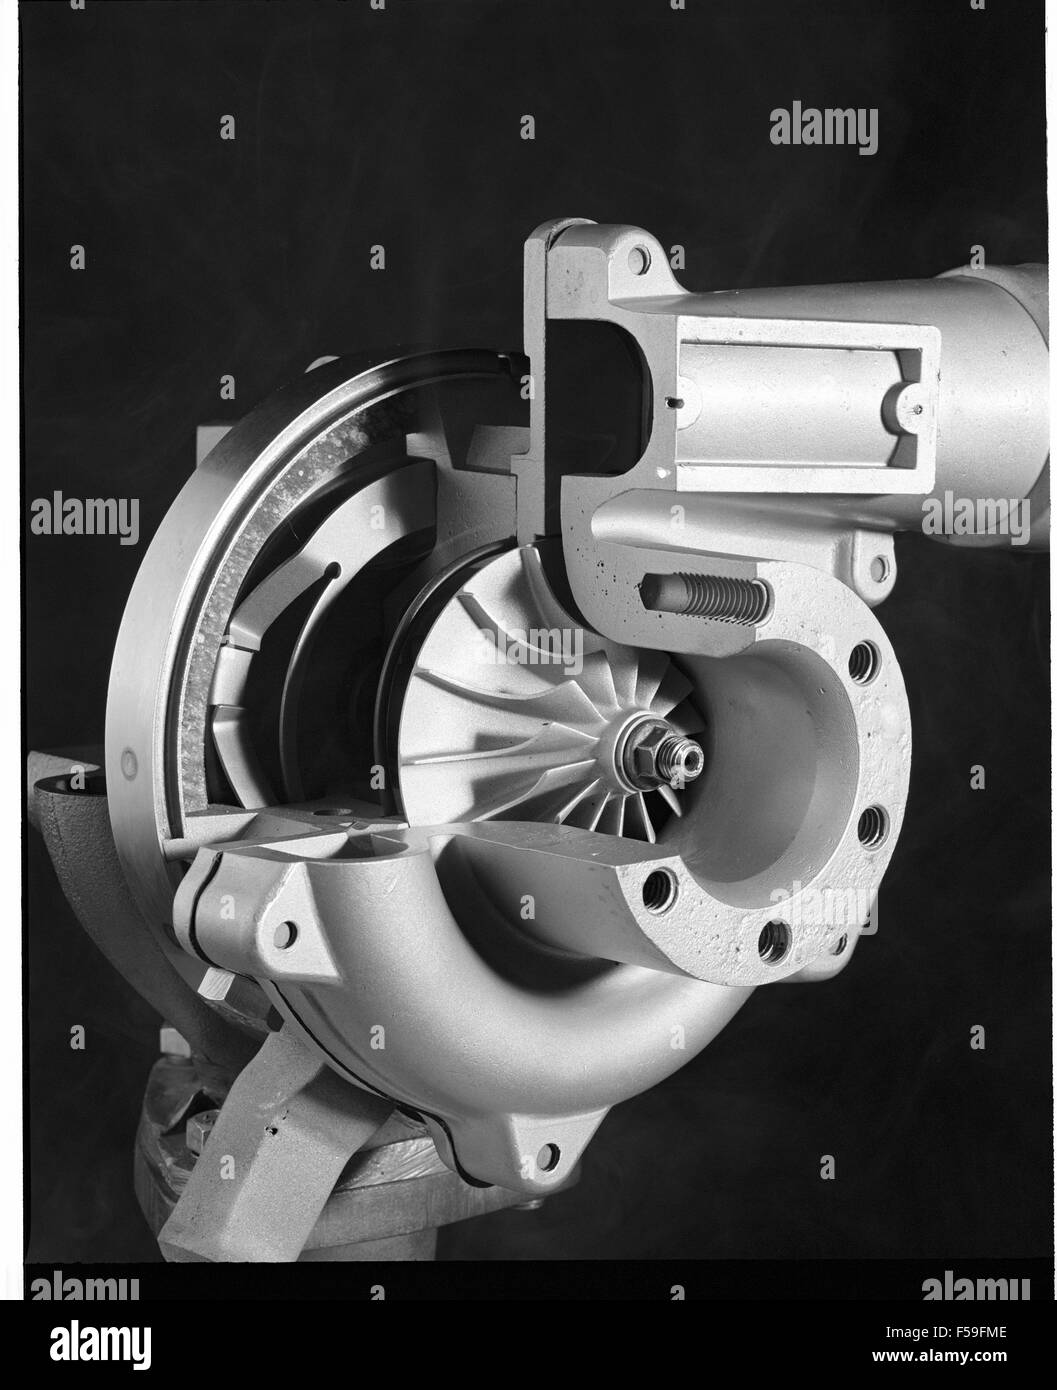 - Turbo turbocompresseur illustré en coupe vue en coupe montrant fonctionnement interne Banque D'Images